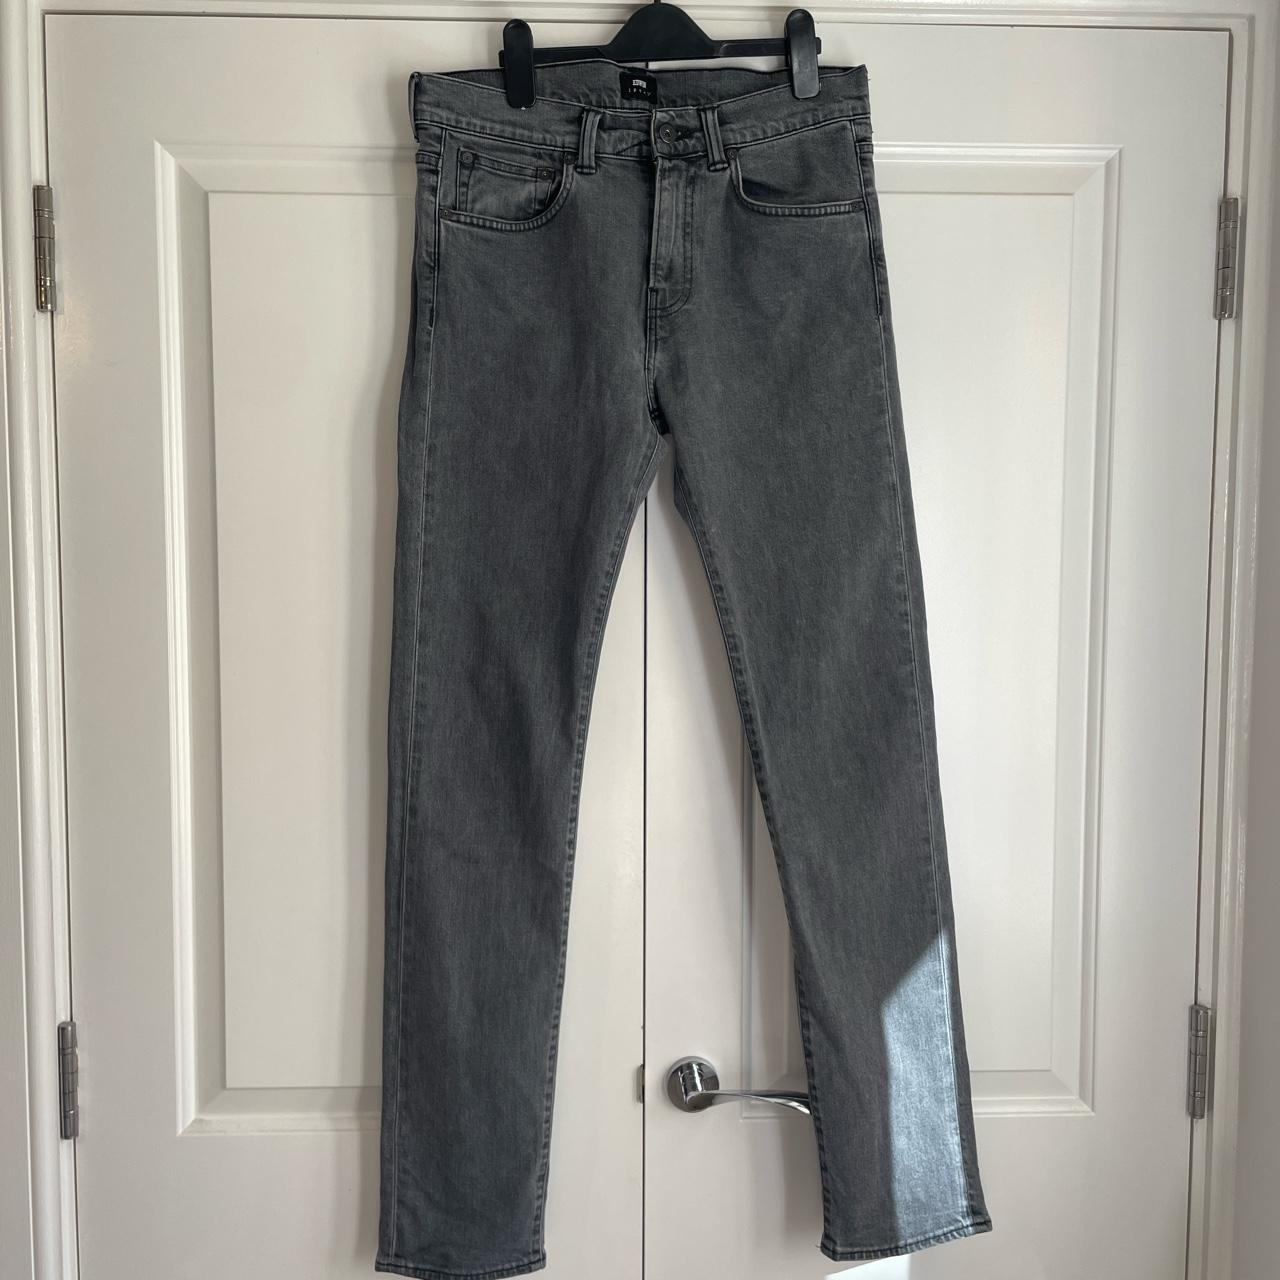 Grey Edwin jeans. Waist 30 length 32. #edwin... - Depop